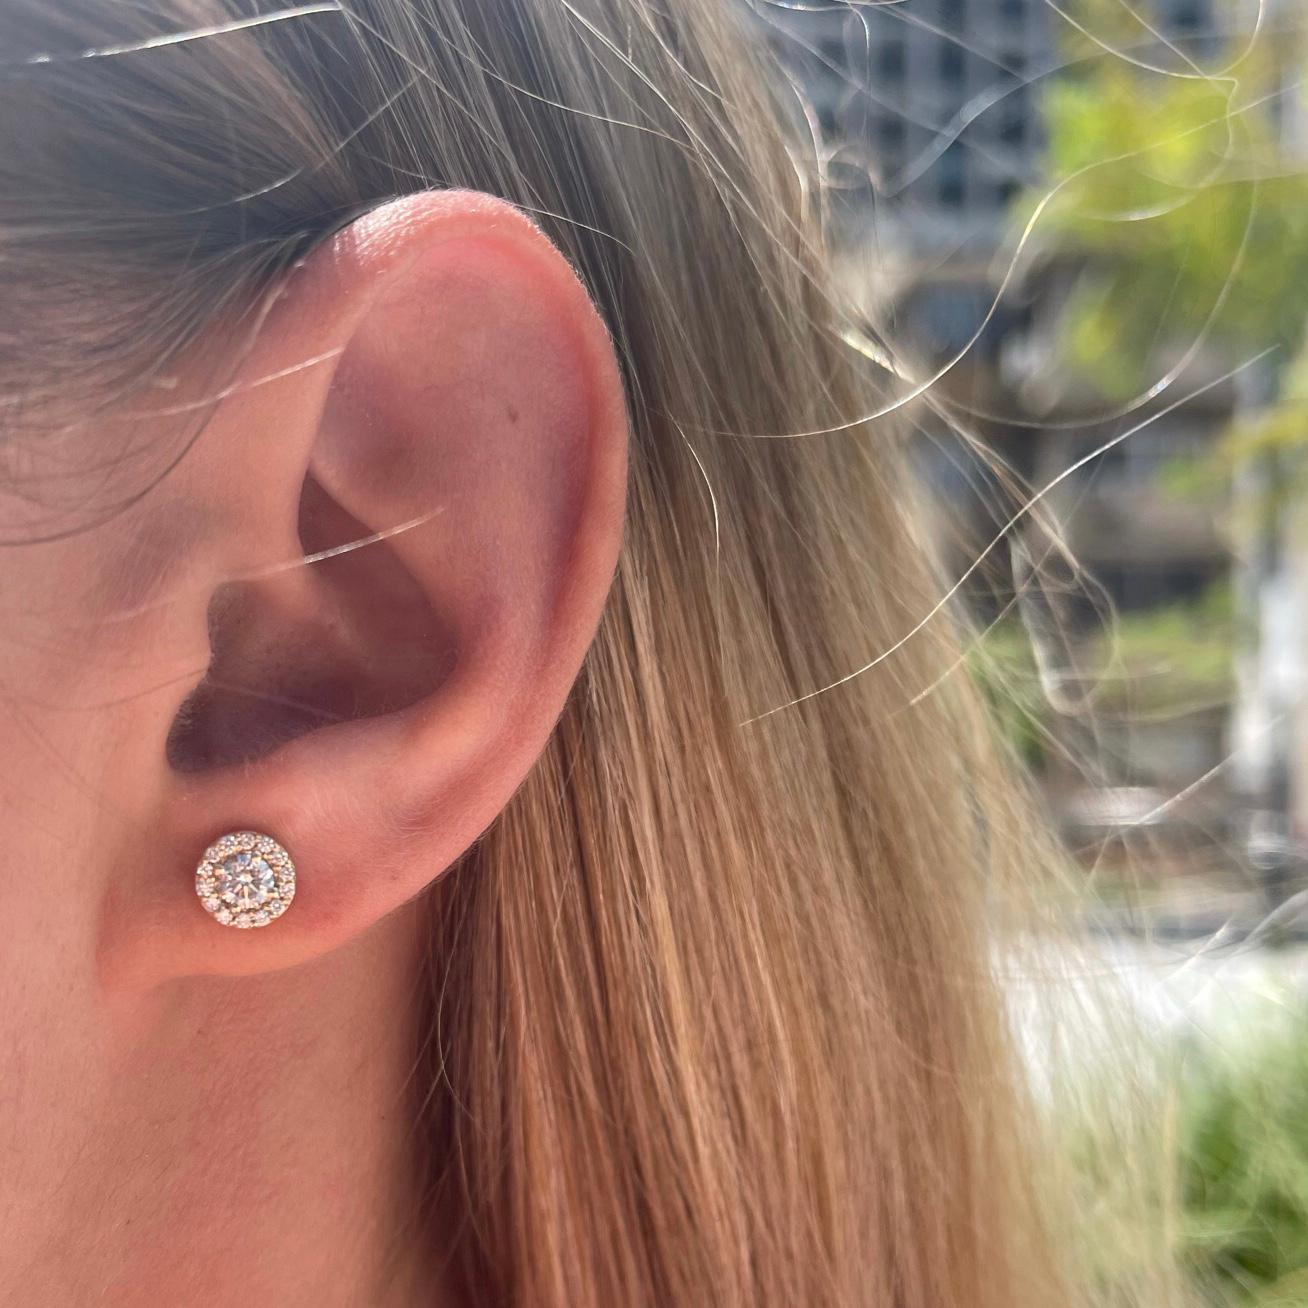 halo diamond earrings on ear